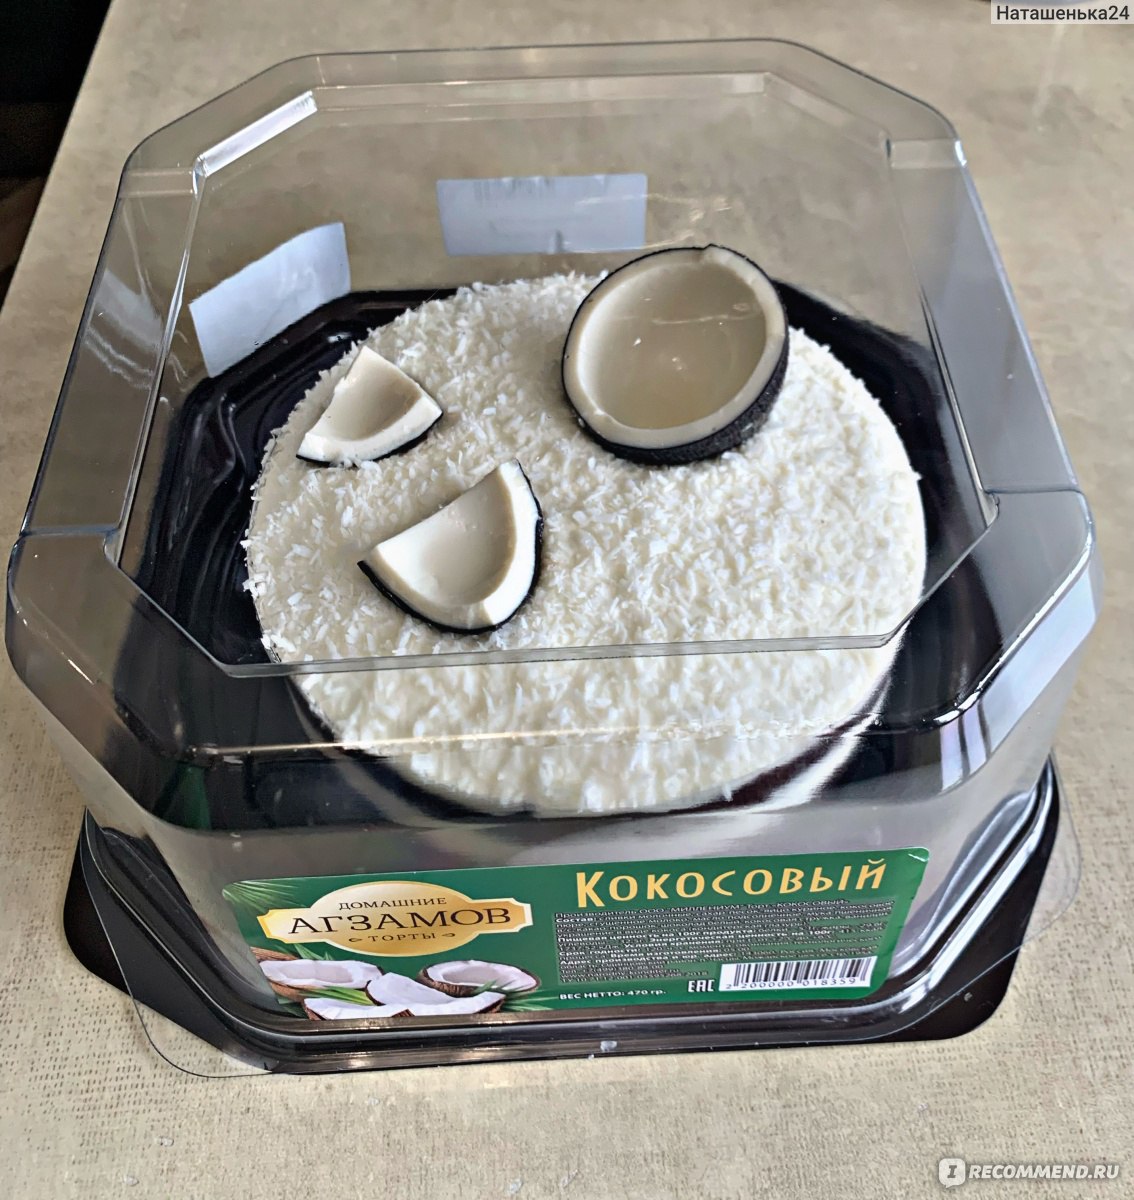 Торт кокосовый Агзамов